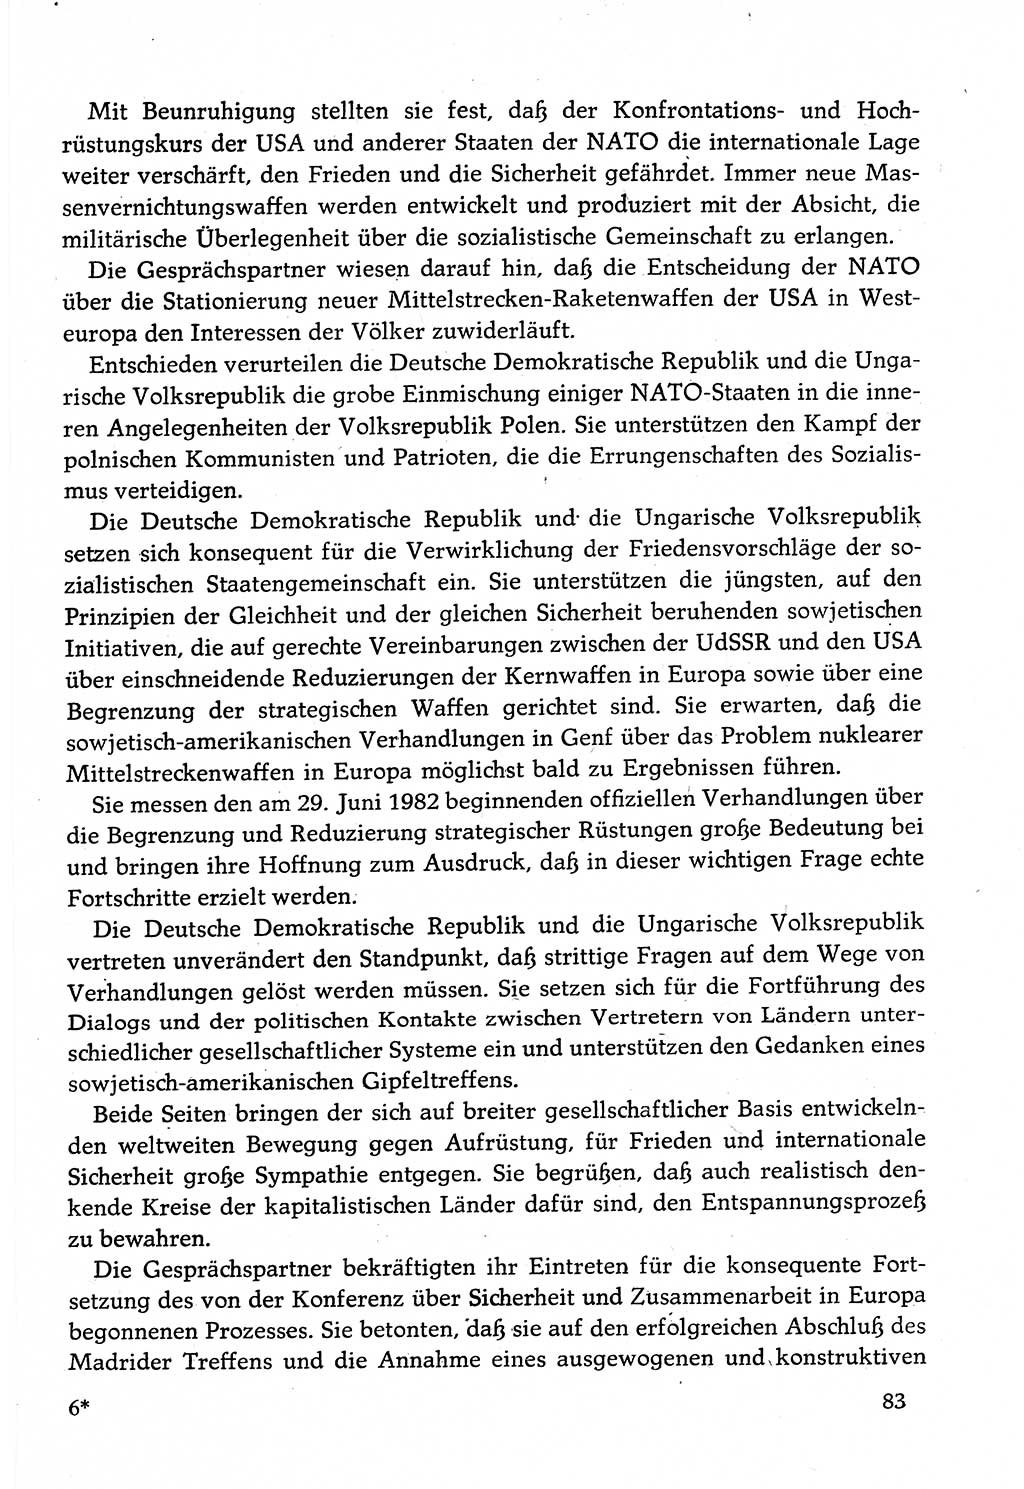 Dokumente der Sozialistischen Einheitspartei Deutschlands (SED) [Deutsche Demokratische Republik (DDR)] 1982-1983, Seite 83 (Dok. SED DDR 1982-1983, S. 83)